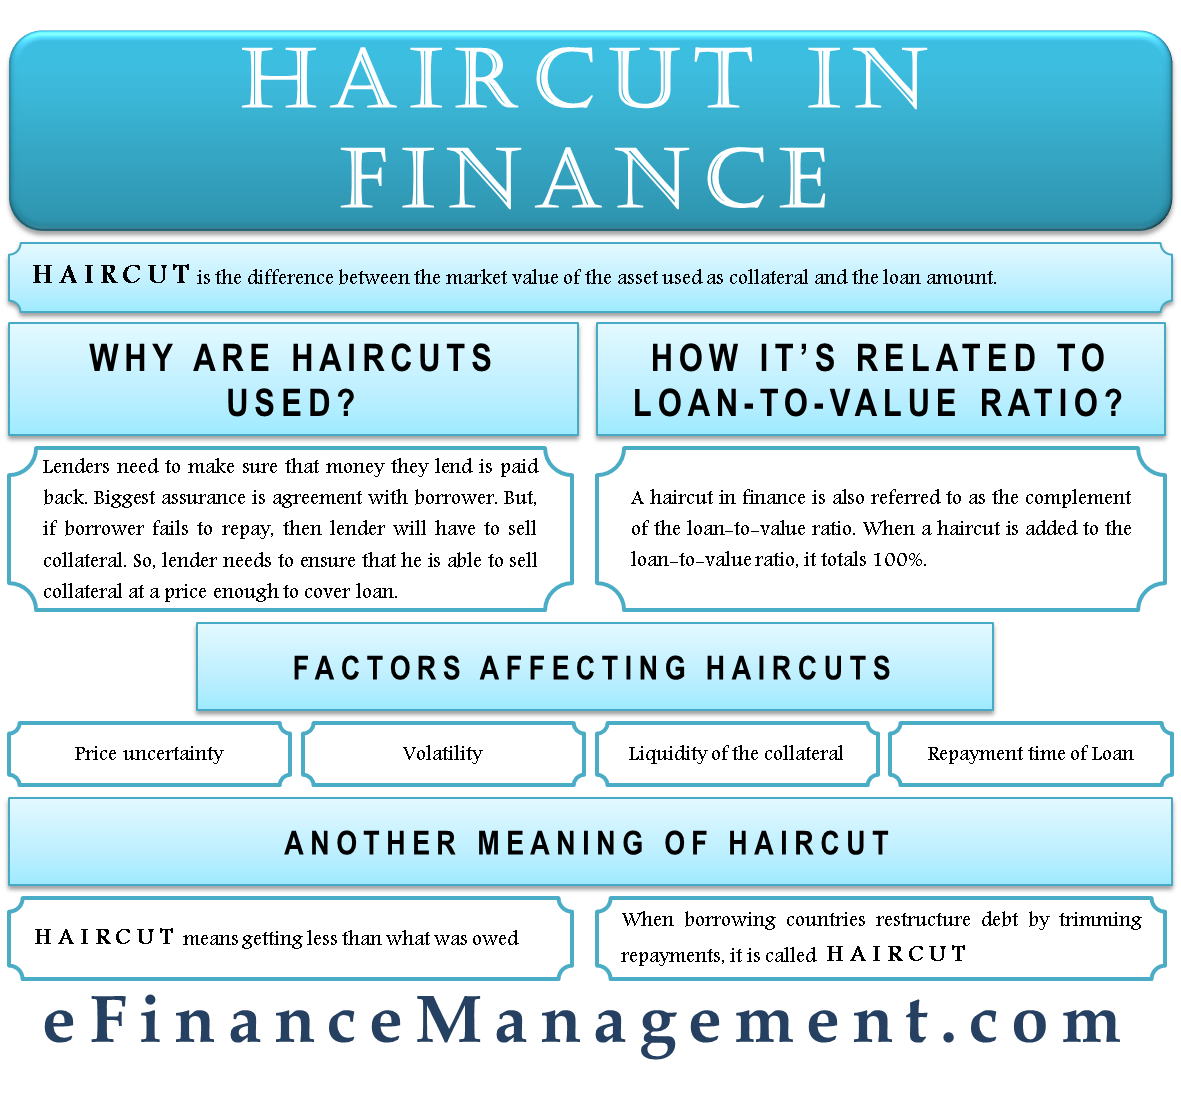 Haircut in Finance